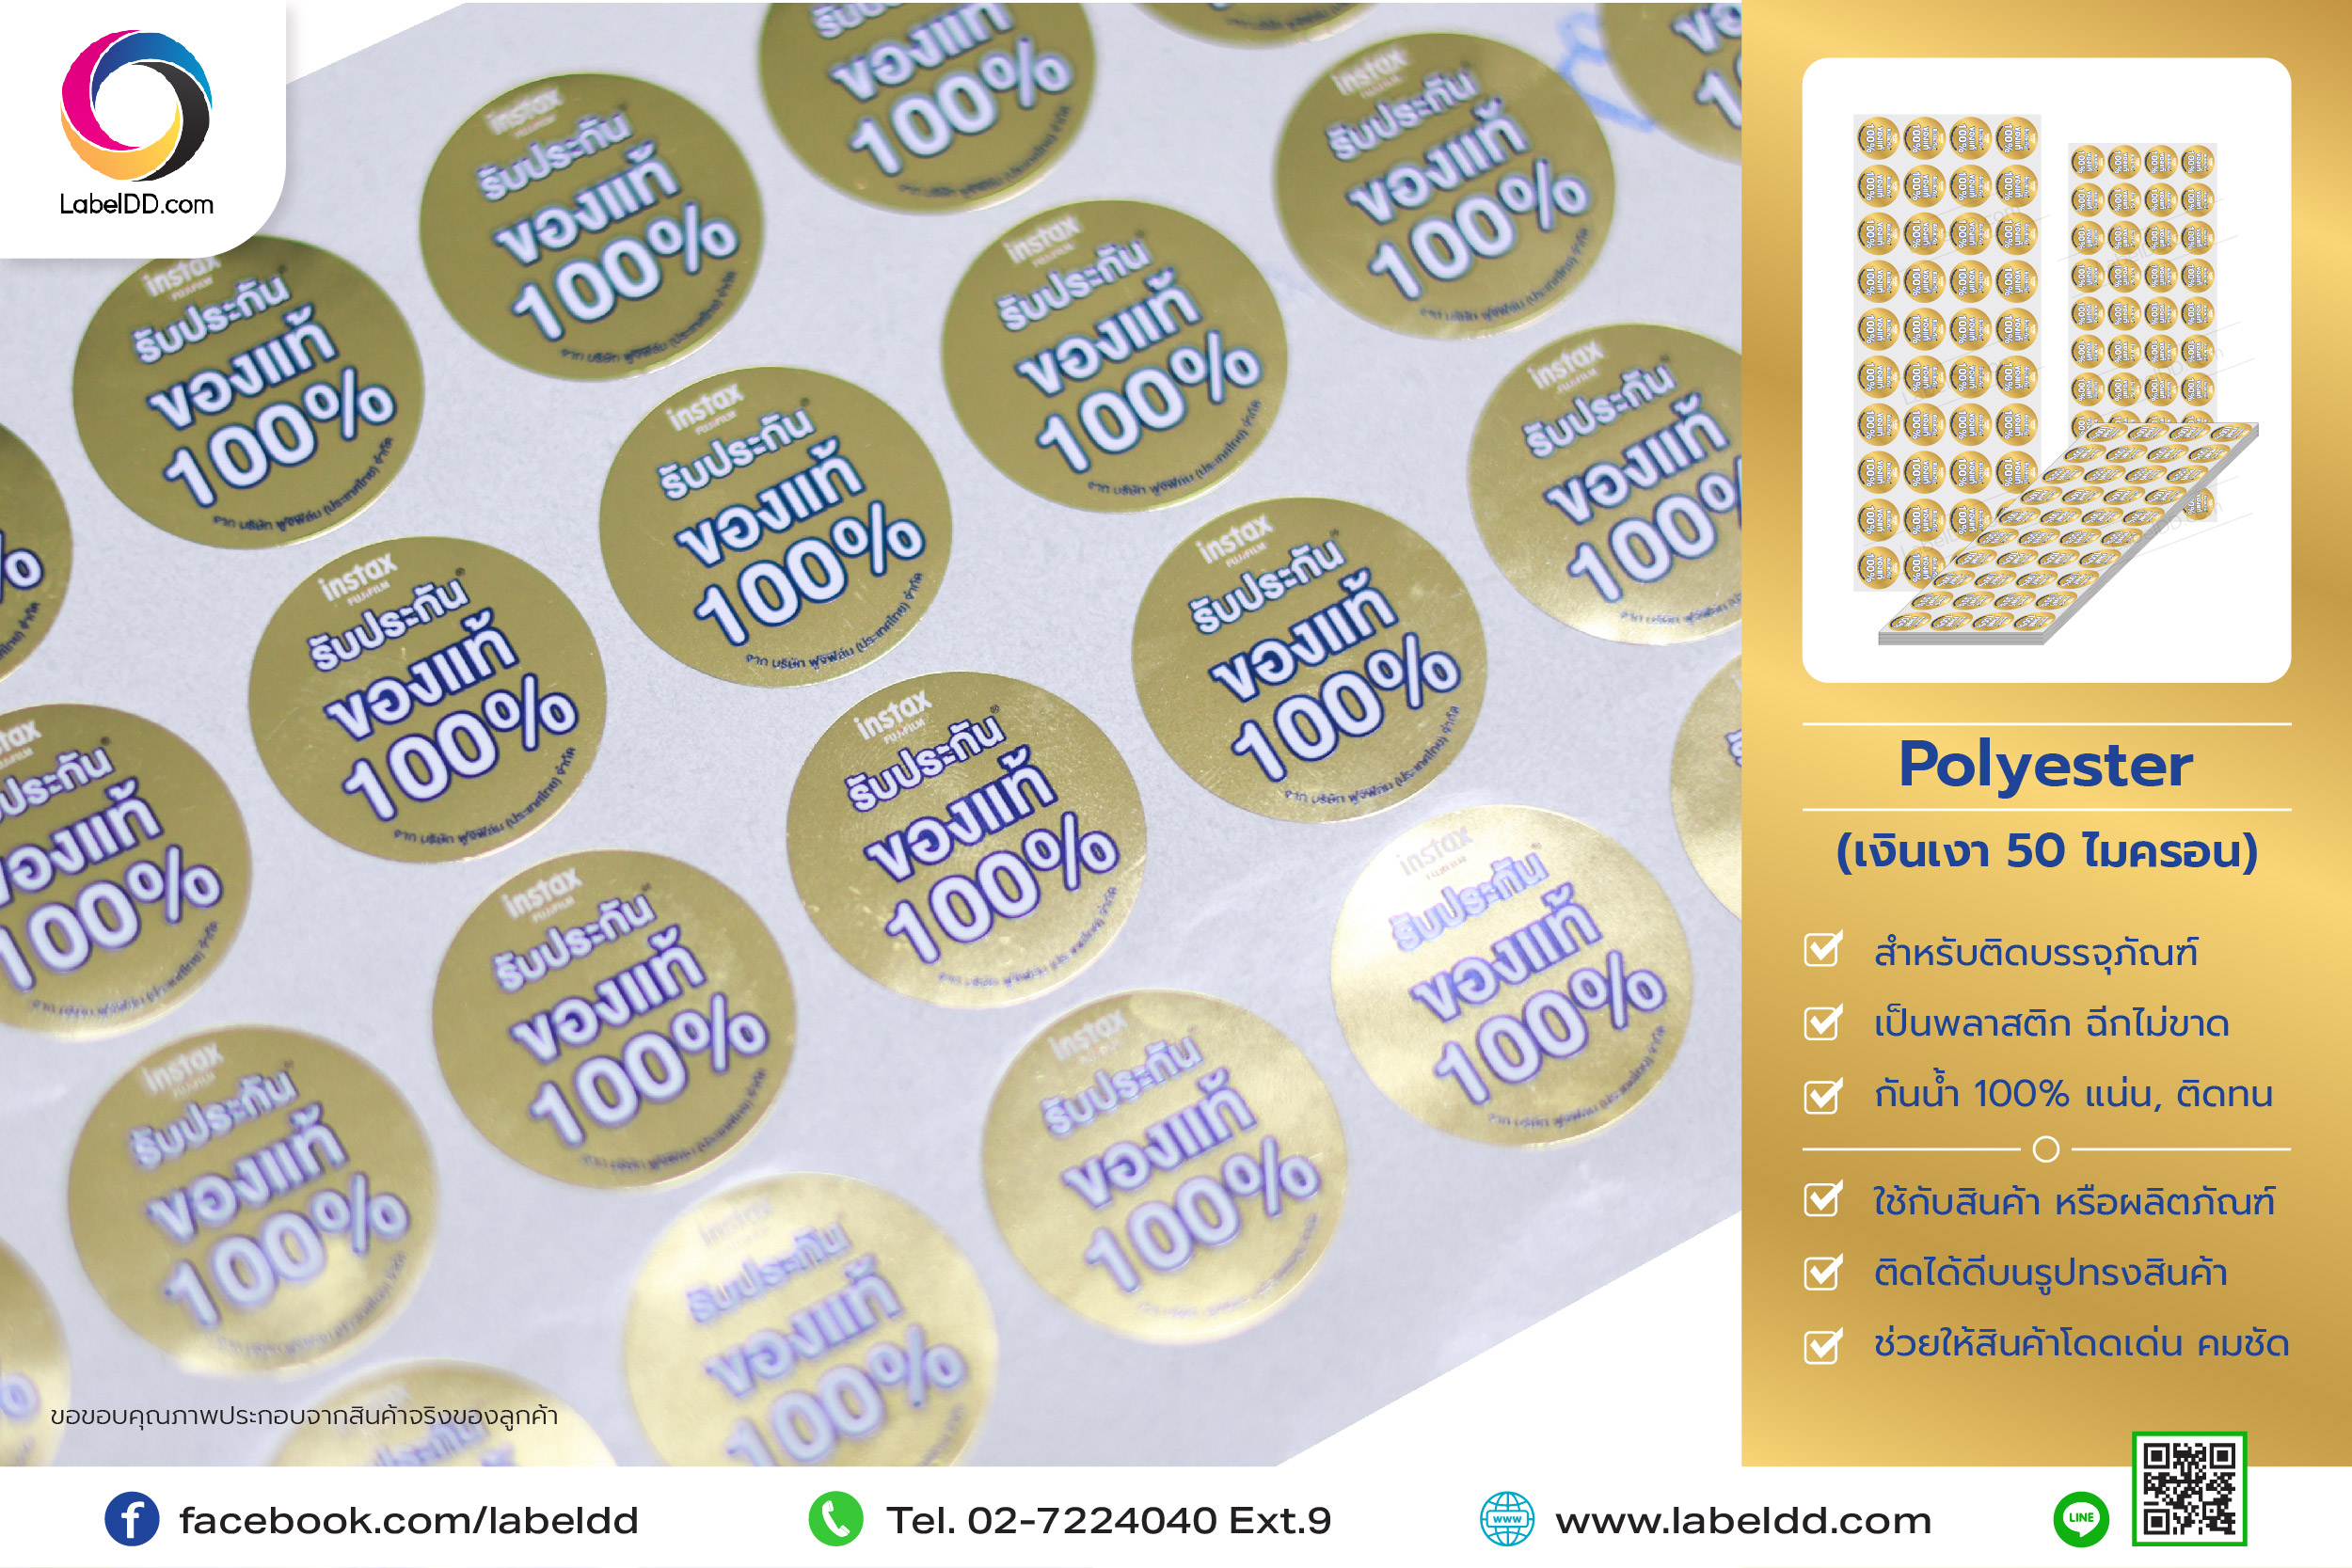 สติ๊กเกอร์ Label Sticker Polyester (PET เงินเงา 50 ไมครอน)